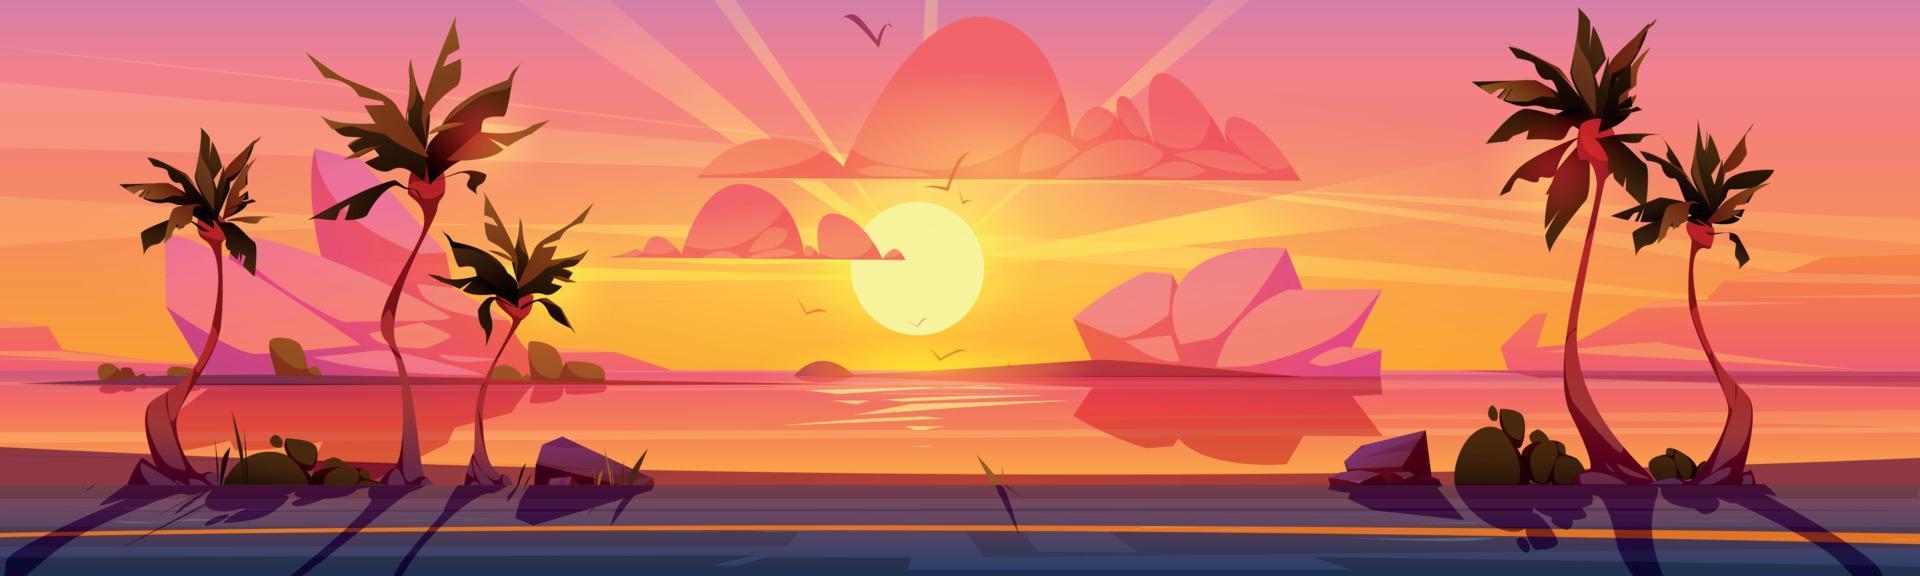 coucher de soleil tropical, illustration de dessin animé de route côtière vecteur